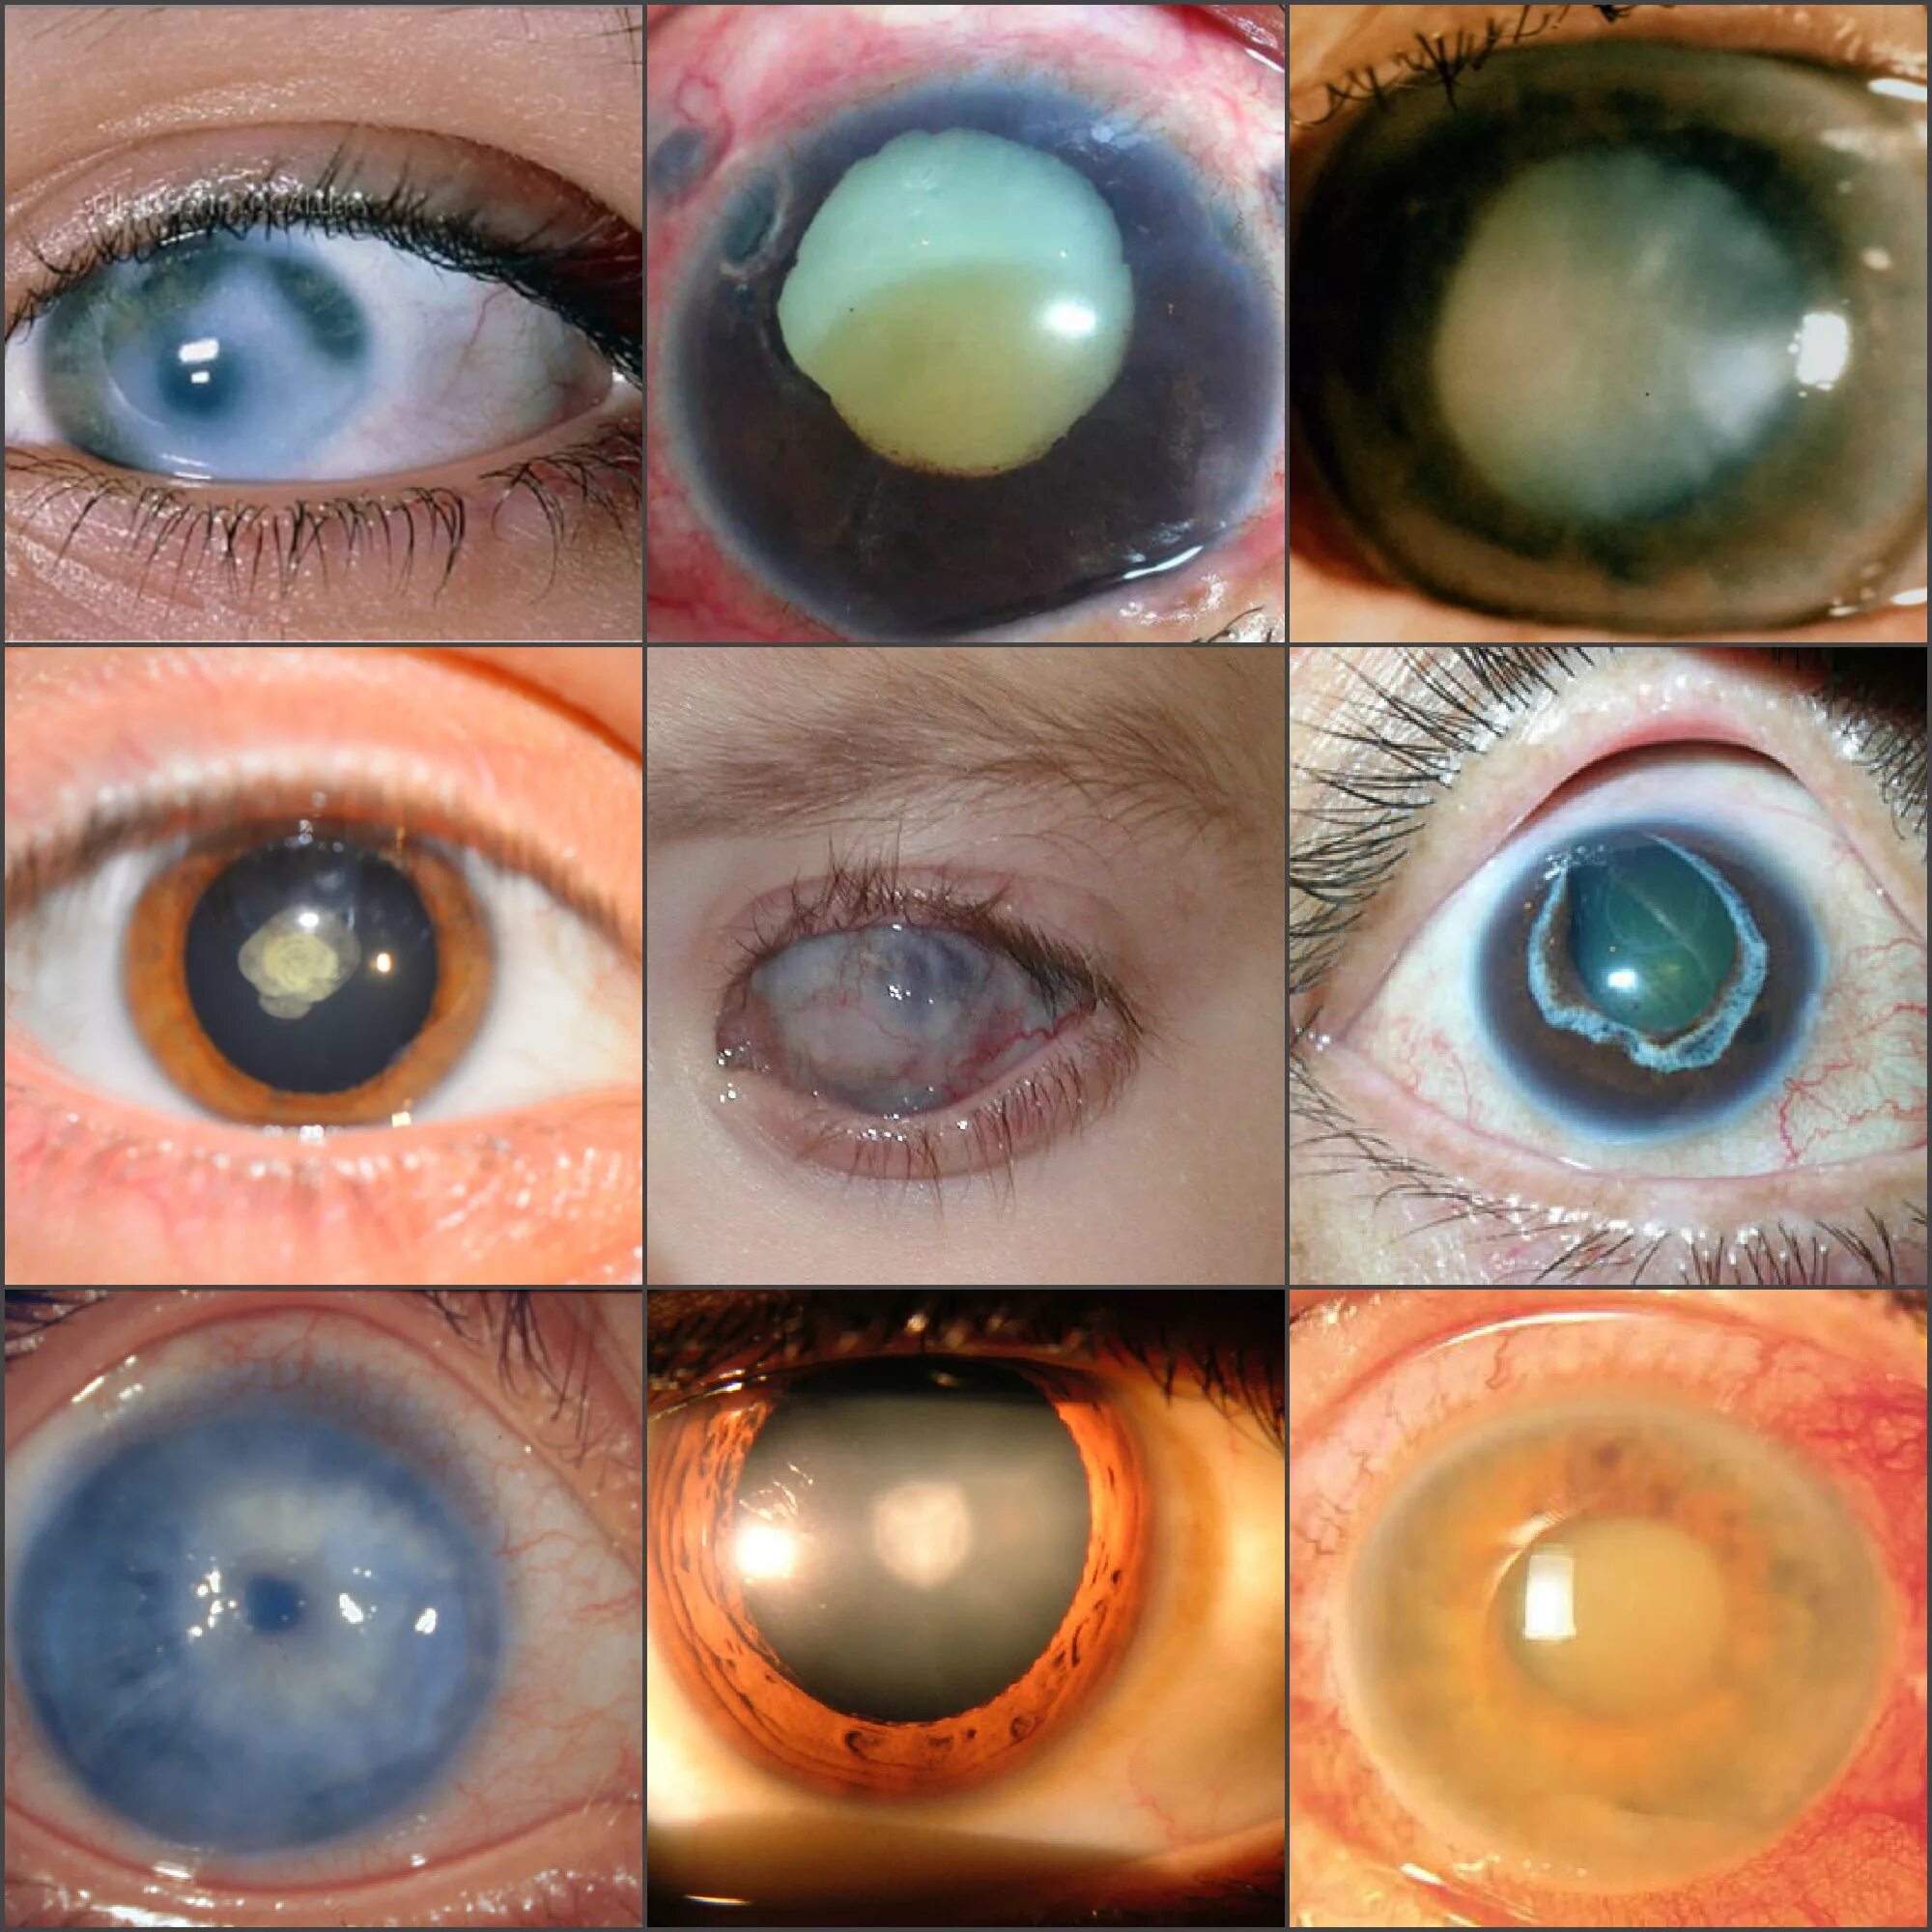 Факолитическая катаракта. Миопизирующая катаракта. Закрытоугольная глаукома глаза. Факоморфическая катаракта. Причины глаукомы глаза